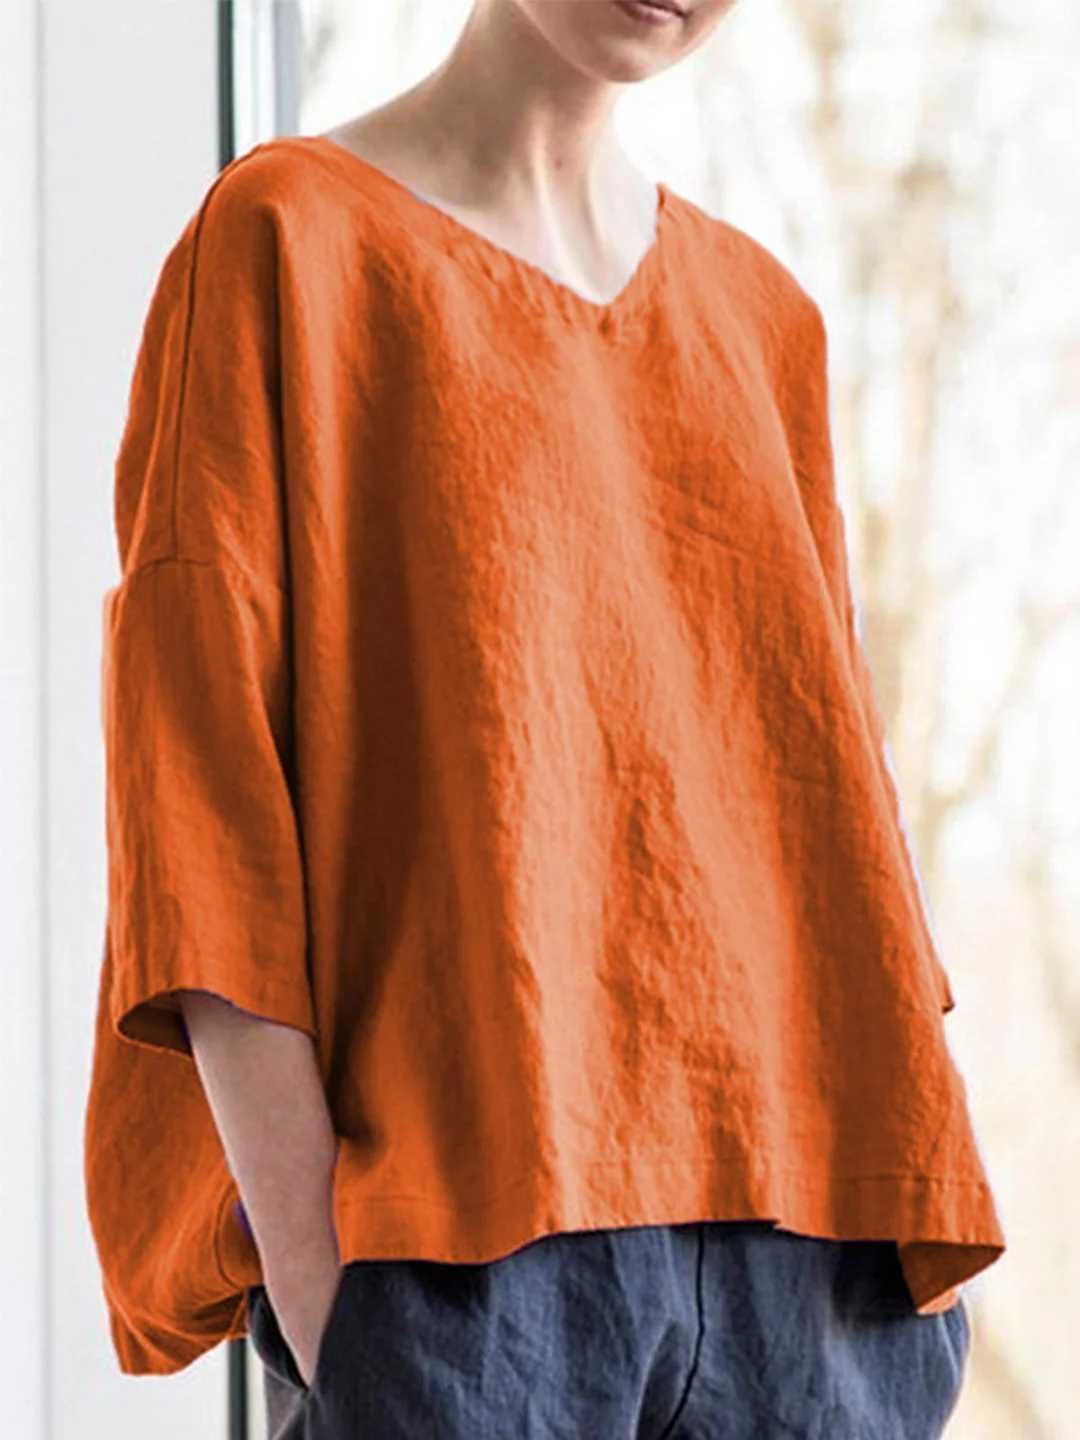 Women Casual Top V Neck Asymmetrical Long Sleeve Cotton Shirt